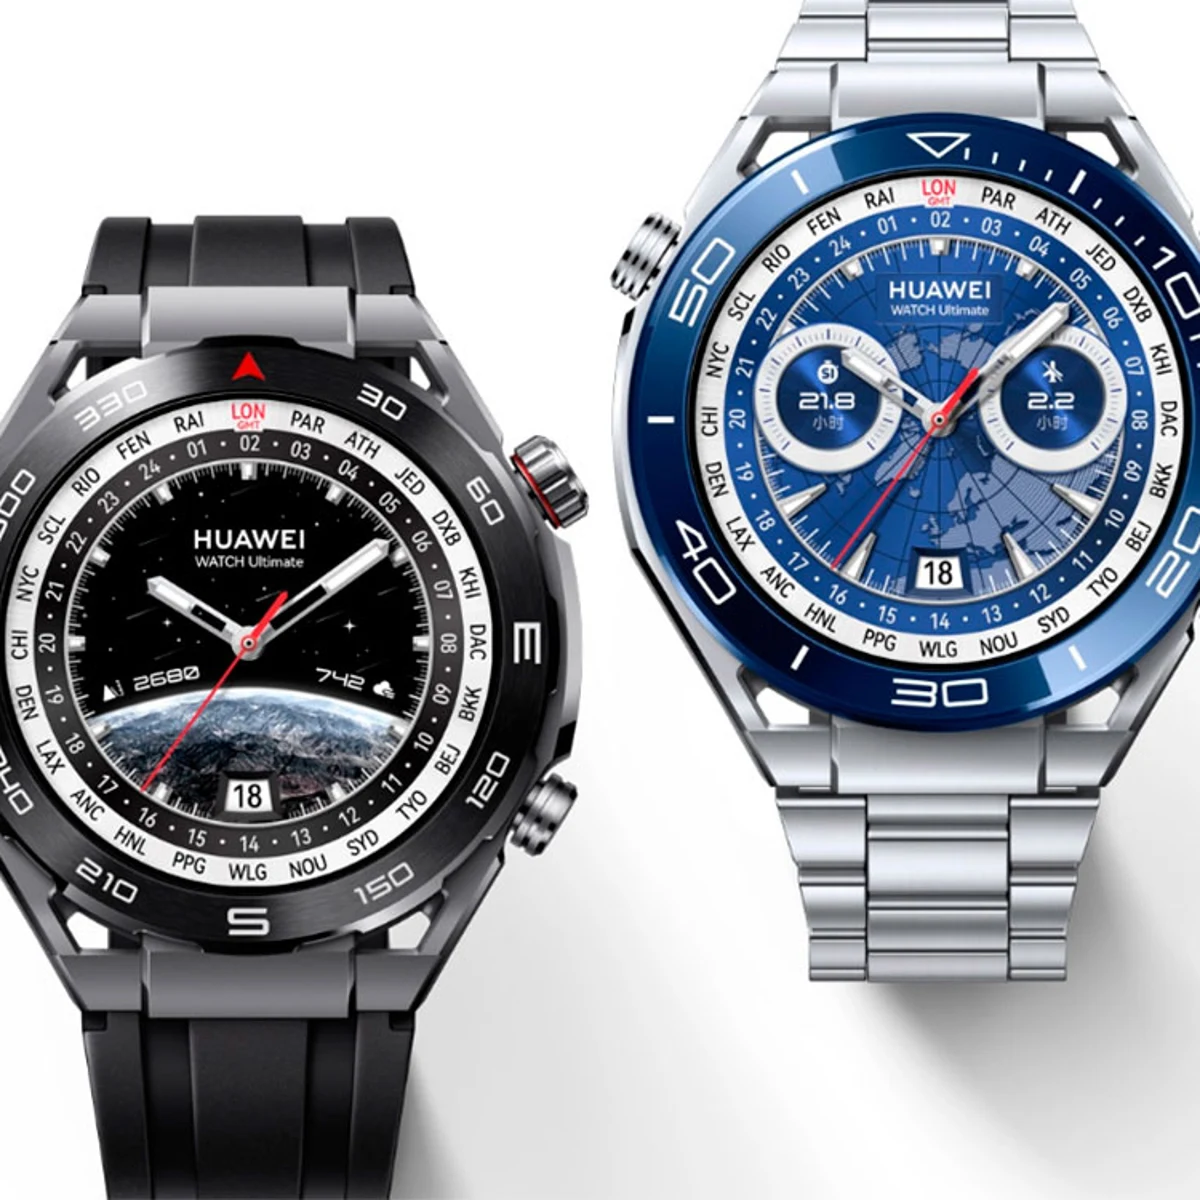 Reseña del más avanzado reloj hasta ahora: Huawei Watch Ultimate